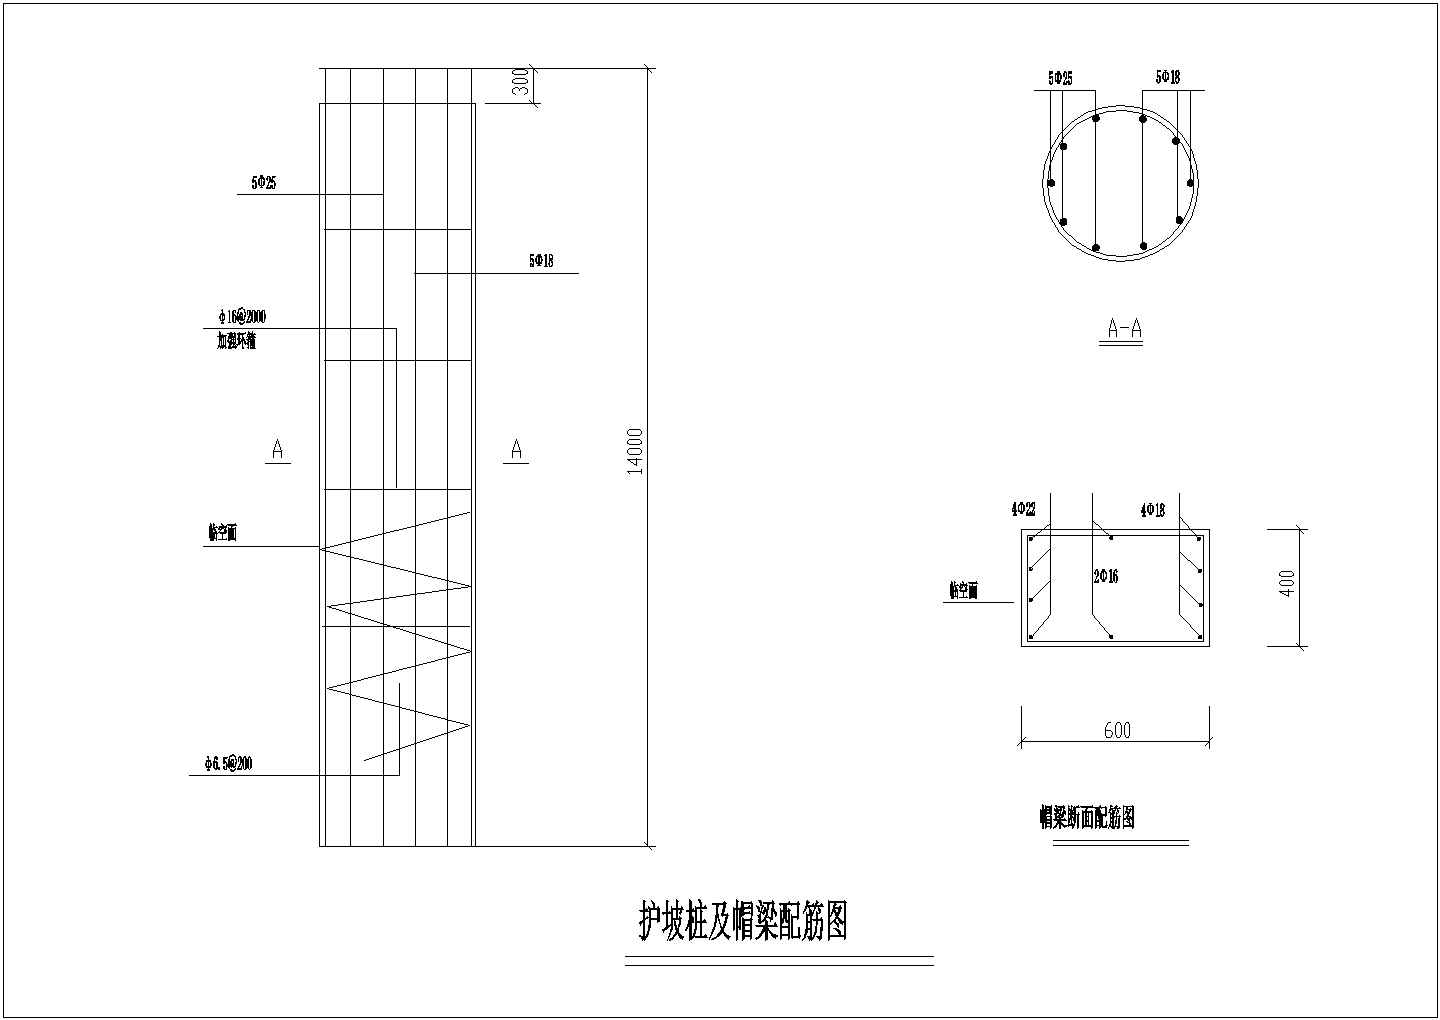 最新整理的CAD设计护坡桩及帽梁配筋图